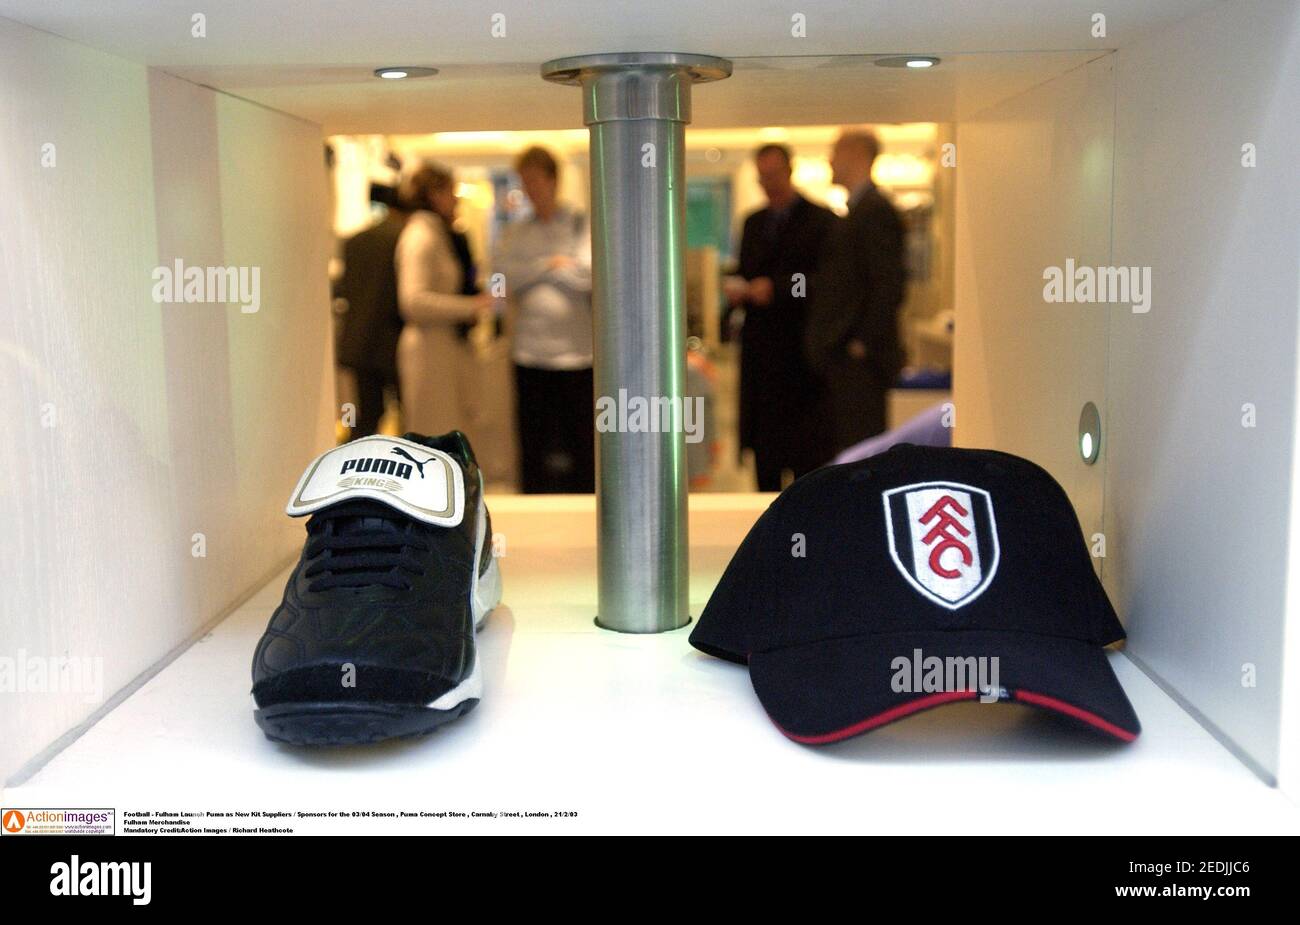 Fútbol - Fulham lanza Puma como nuevos proveedores de Kit / patrocinadores  para la temporada 03/04 , Puma Concept Store , Carnaby Street , Londres ,  21/2/03 Fulham Merchandise crédito obligatorio:Action Images / Richard  Heathcote Fotografía de stock ...